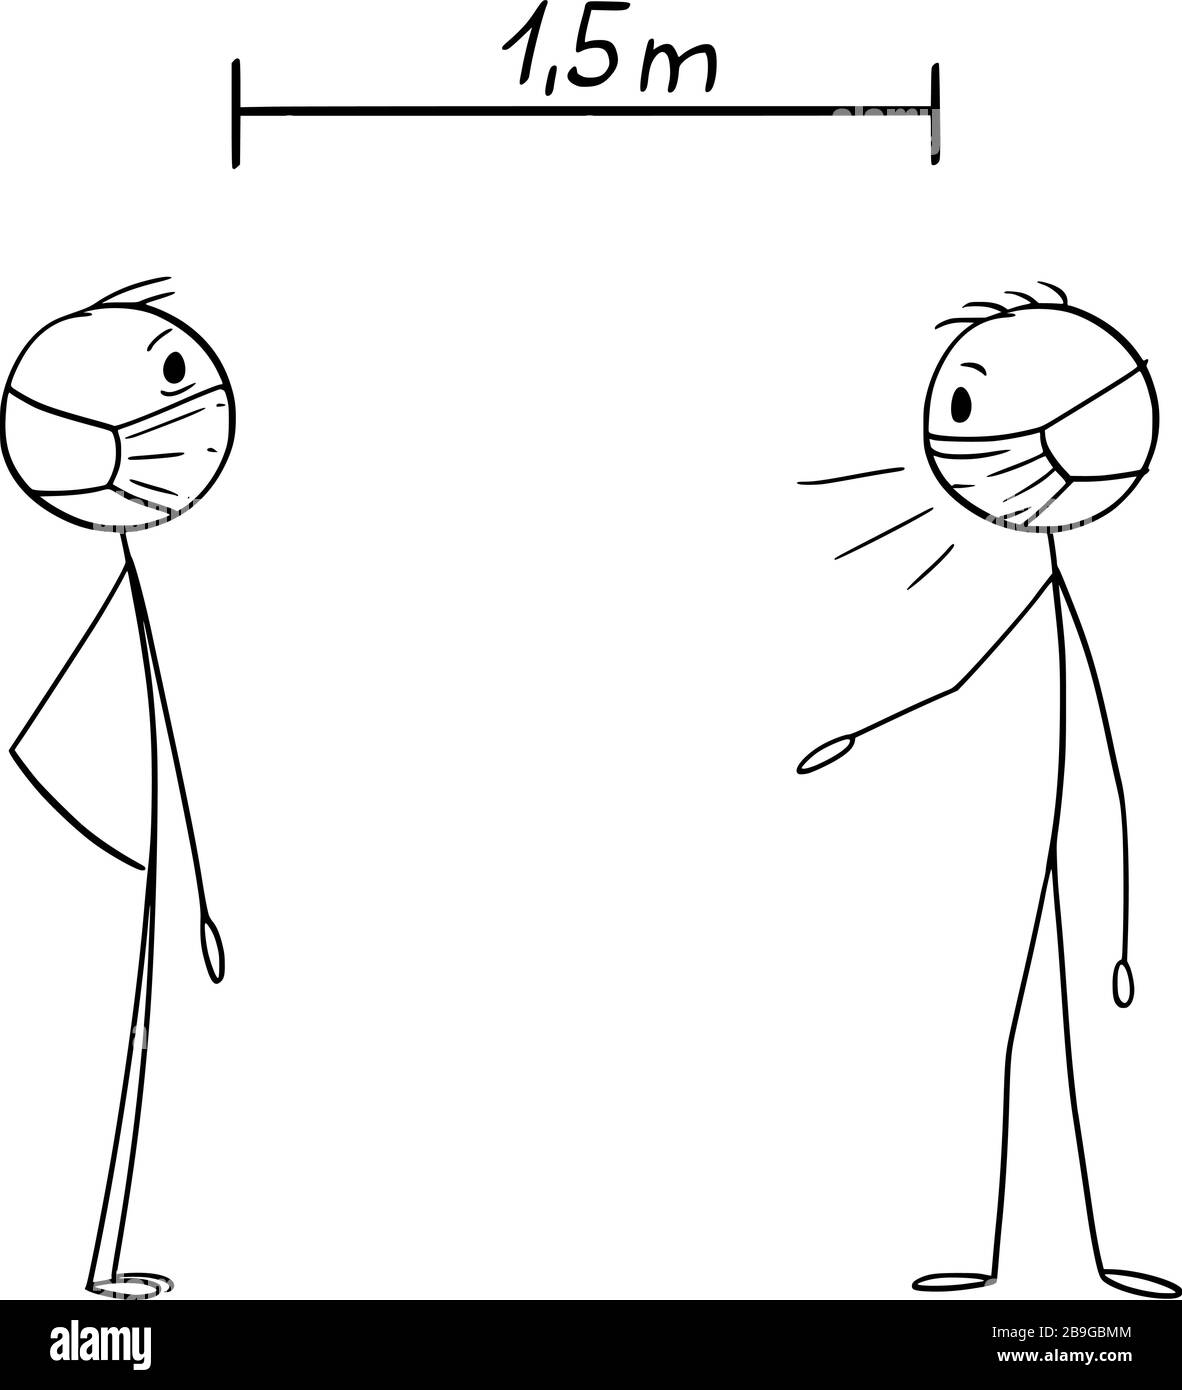 Cartoni animati vettoriali disegno illustrazione istruttiva come parlare con gli altri durante l'epidemia di coronavirus COVID-19. Mantenere la distanza. Illustrazione Vettoriale